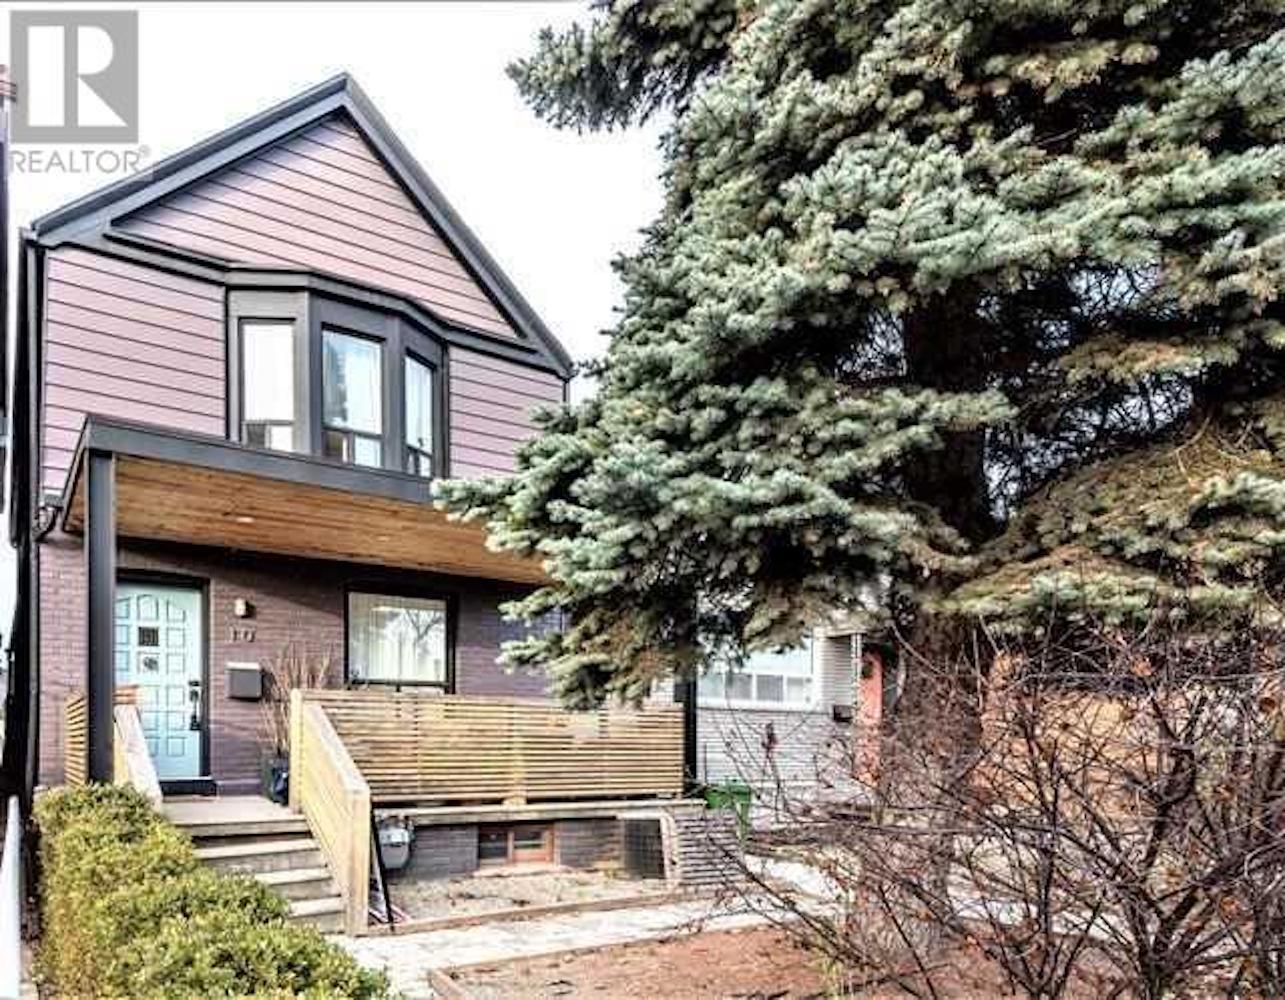 Peek Inside Meghan Markle’s Toronto Home е в списъка за 1,4 милиона долара